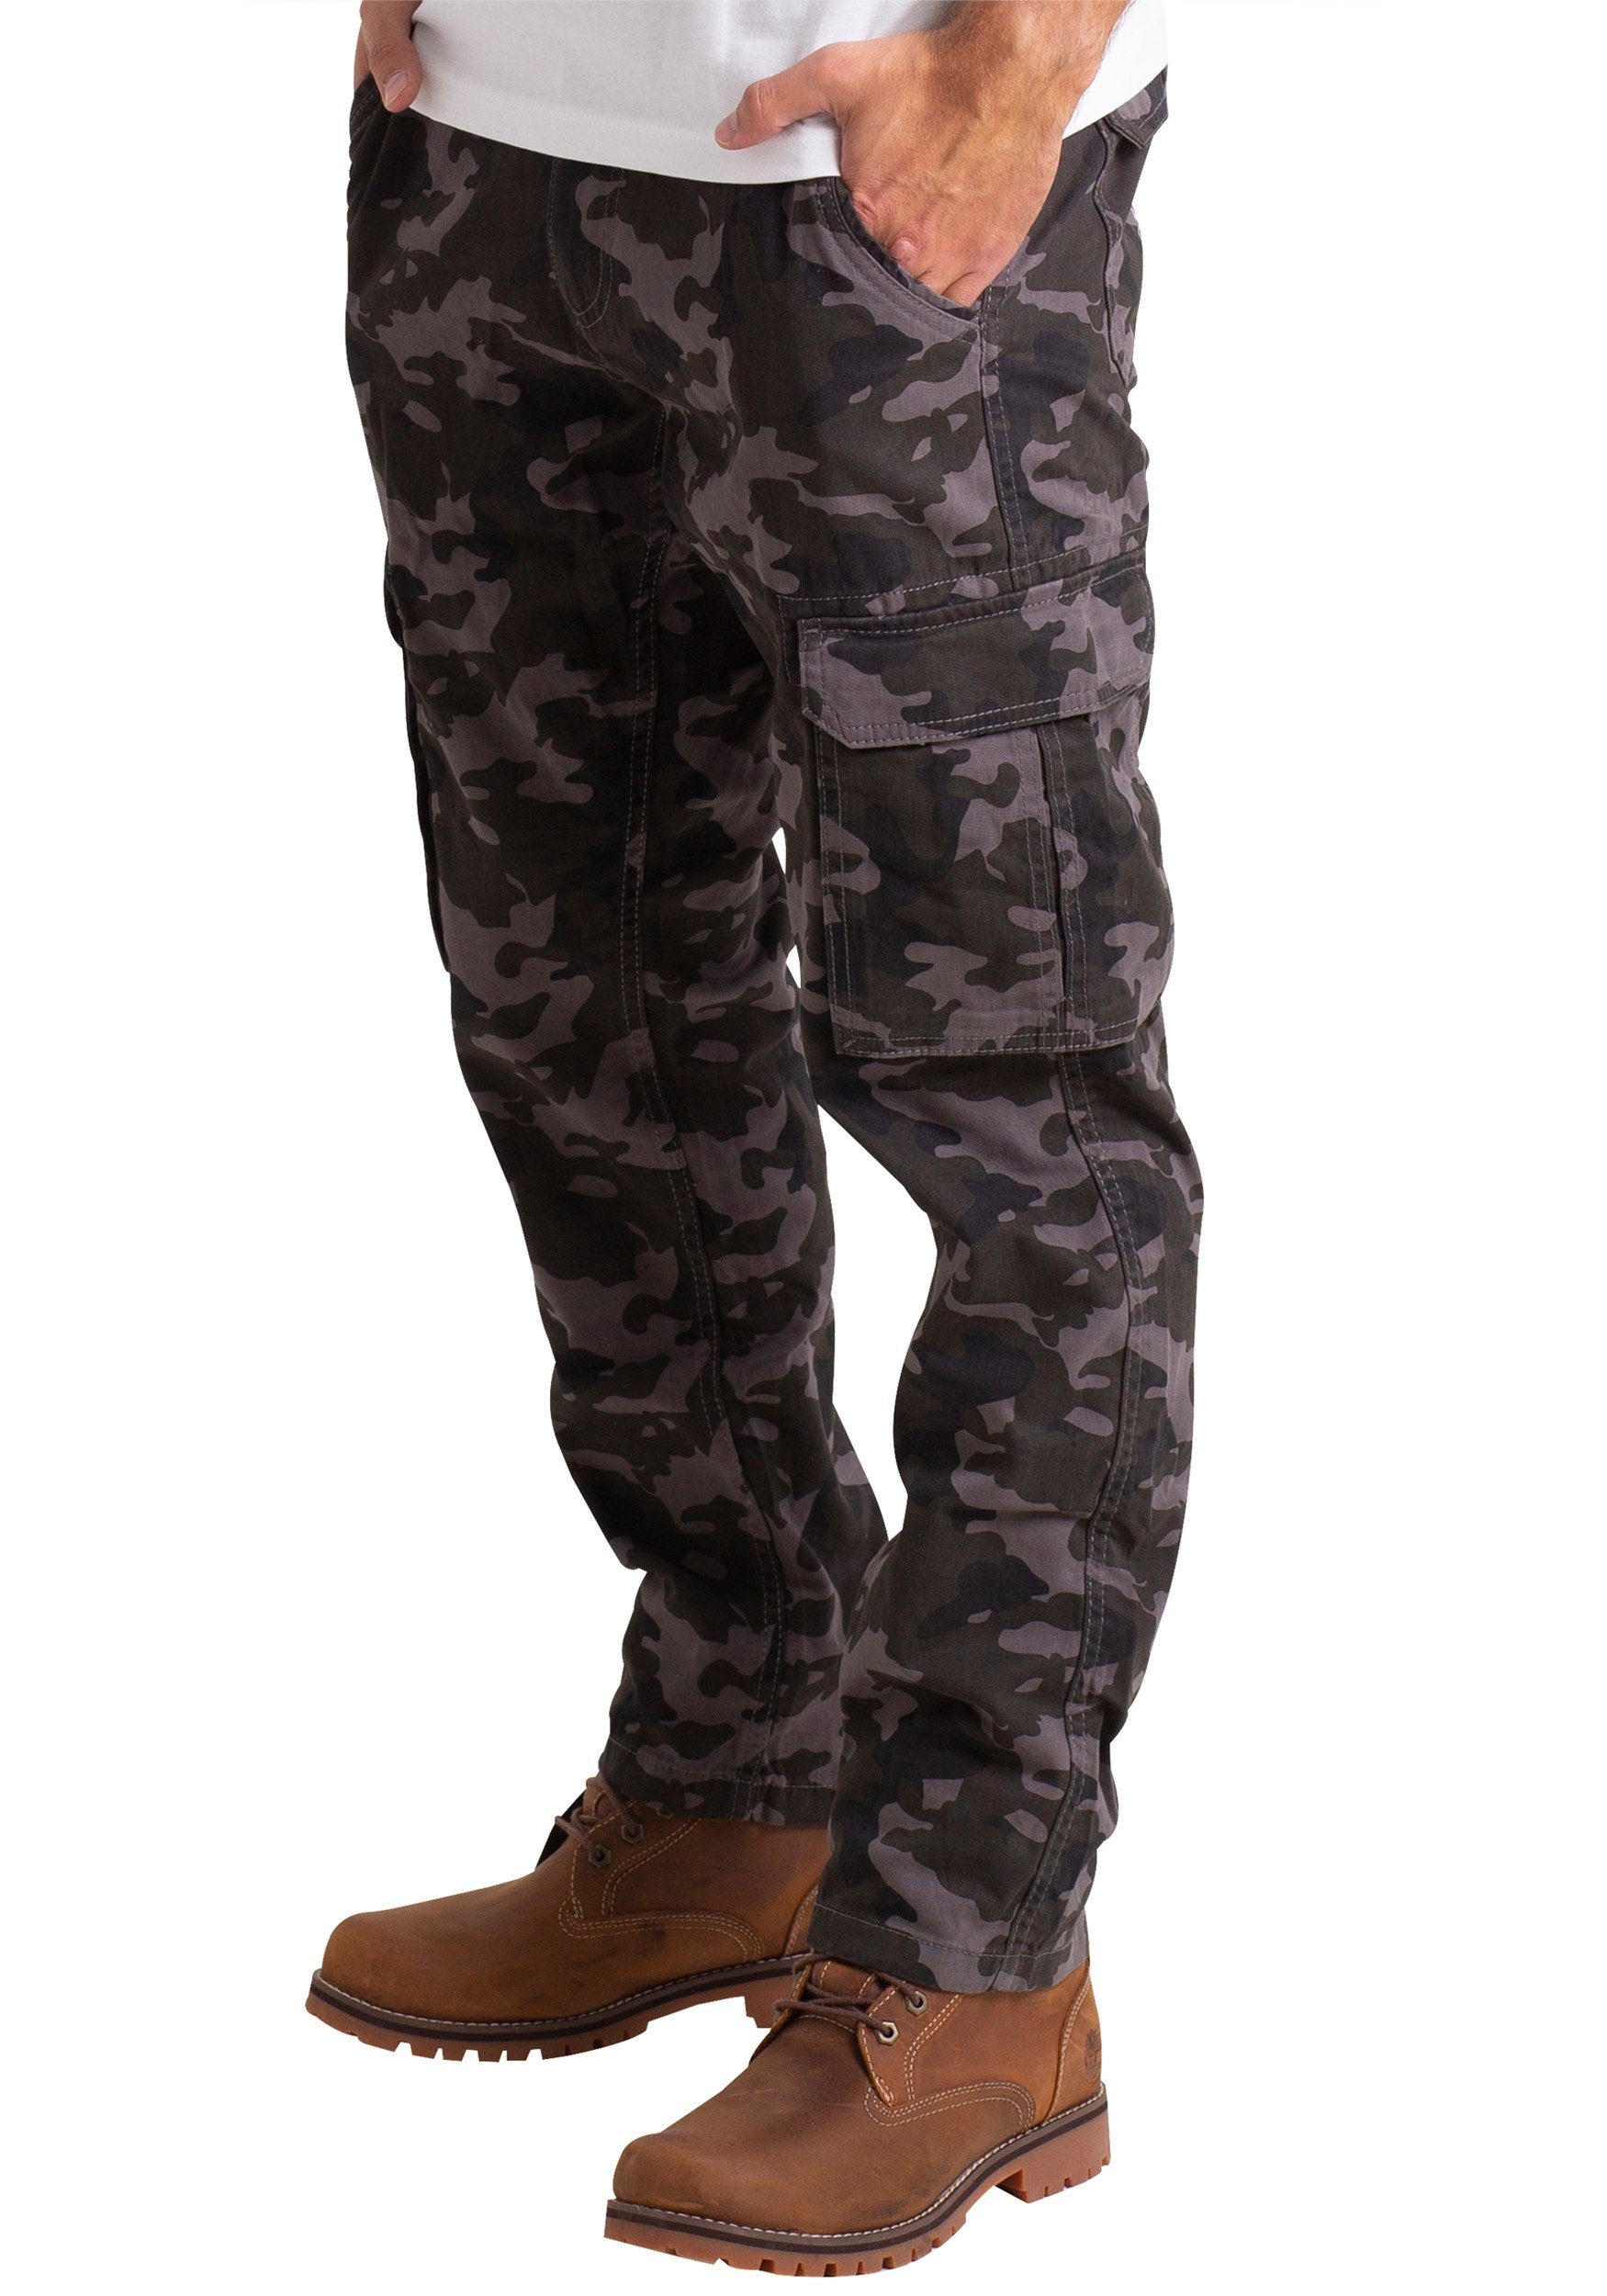 Camouflage Baumwolle Arbeitskleidung Mens Army BlauerHafen Hose Bein Camo Cargohose Holzkohle gerades Cargo